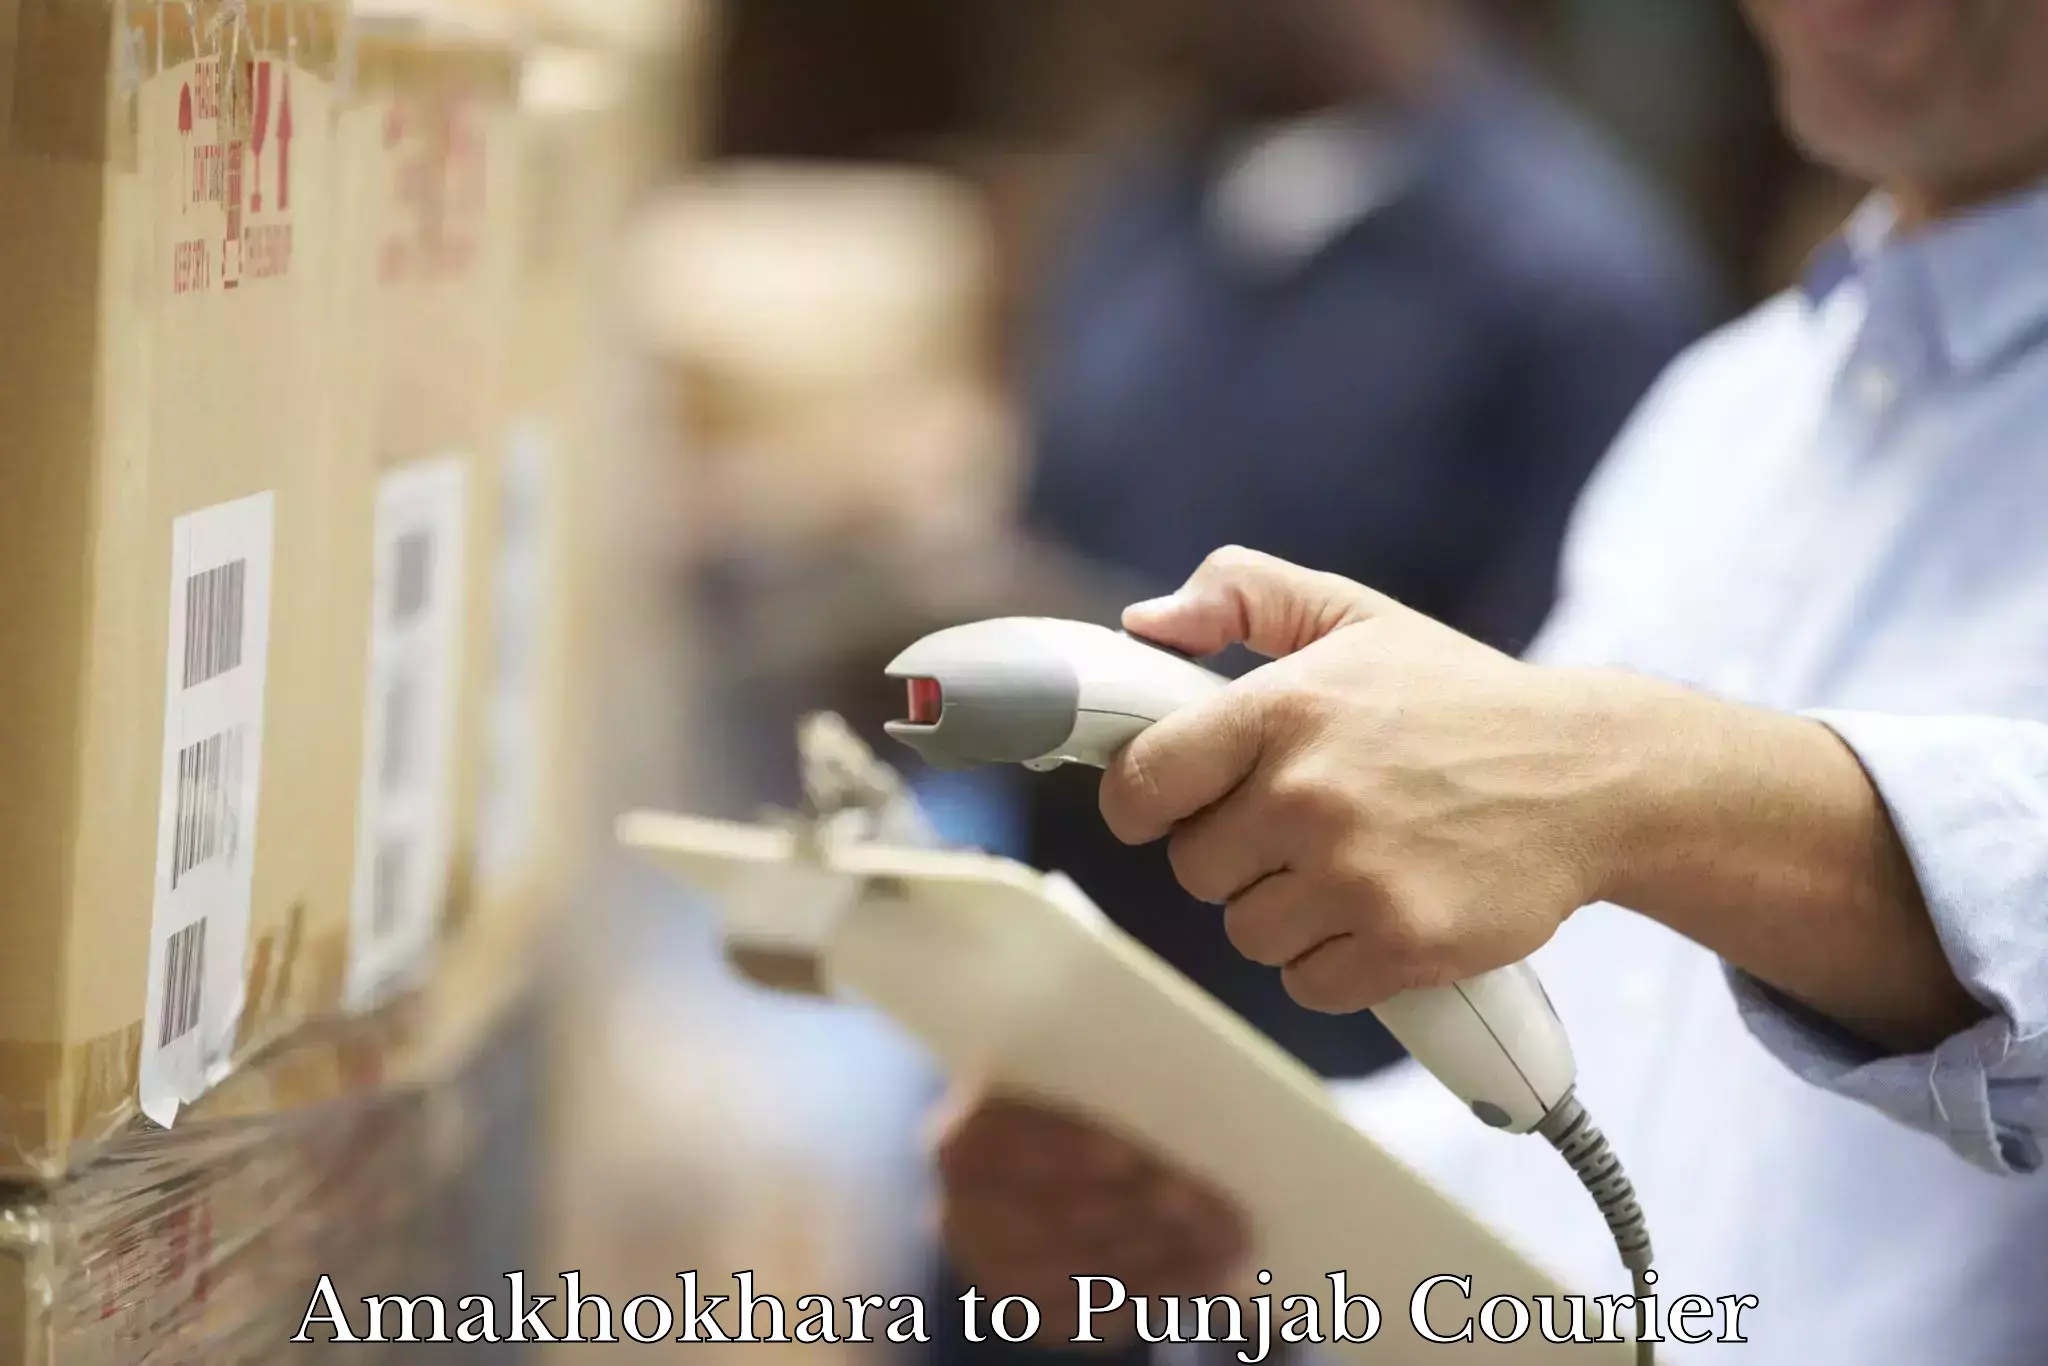 Cargo courier service Amakhokhara to Central University of Punjab Bathinda